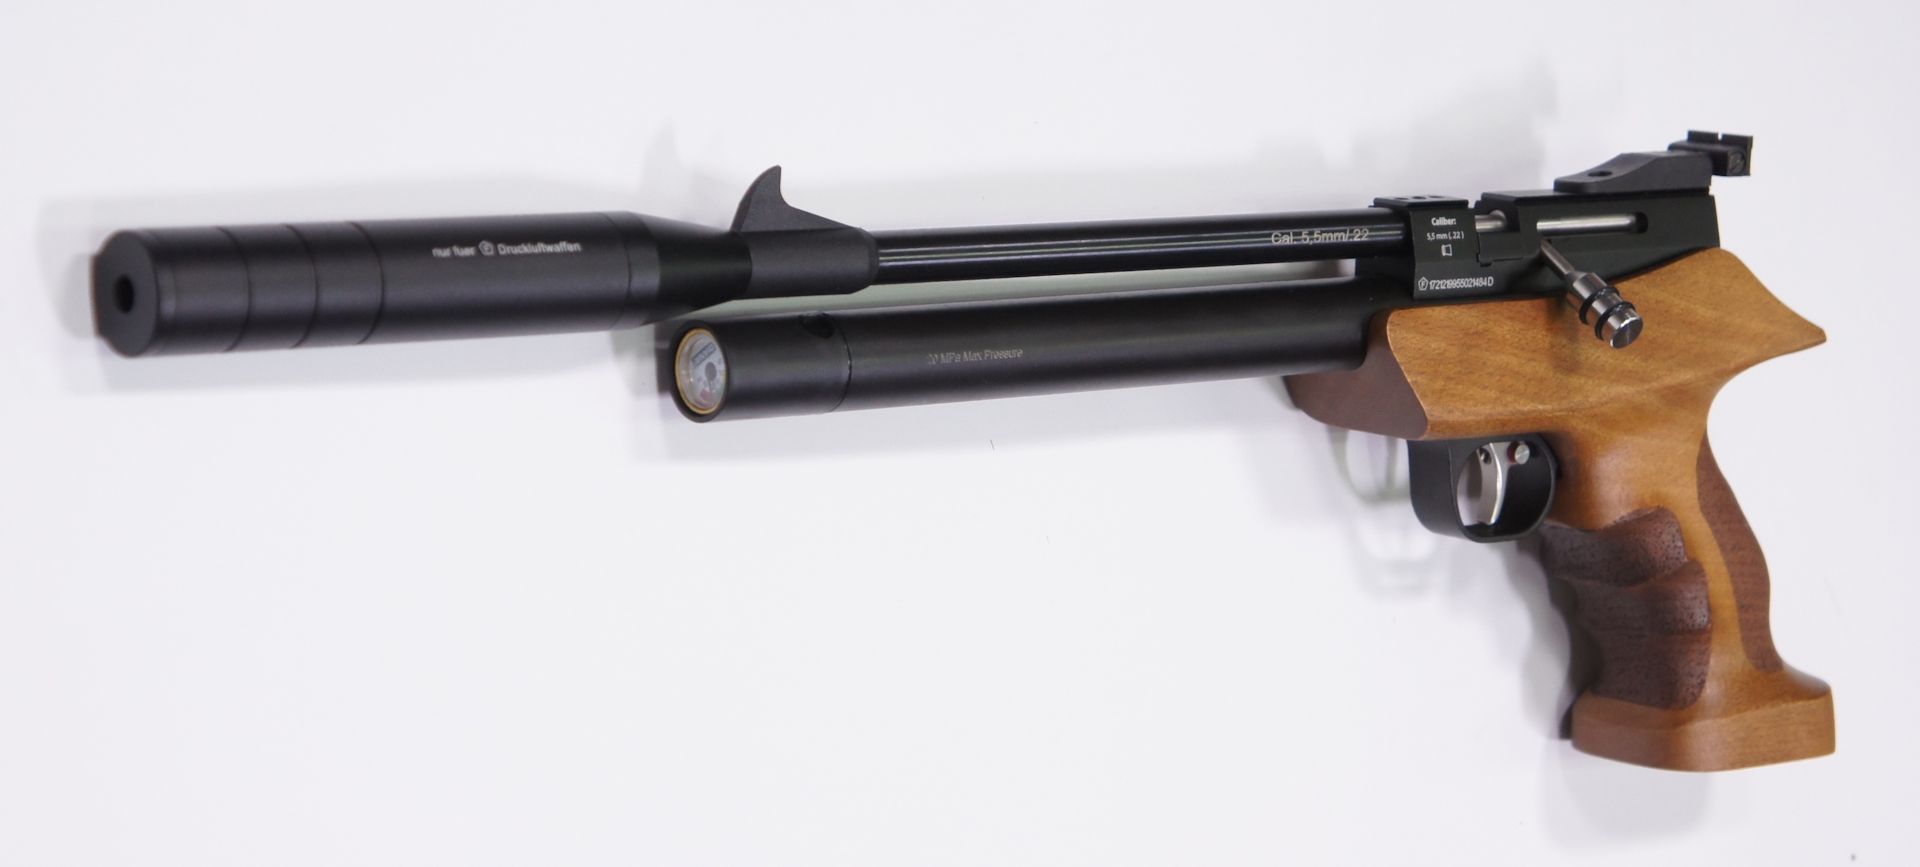 Luftpistole Diana Bandit im Kaliber 4,5mm